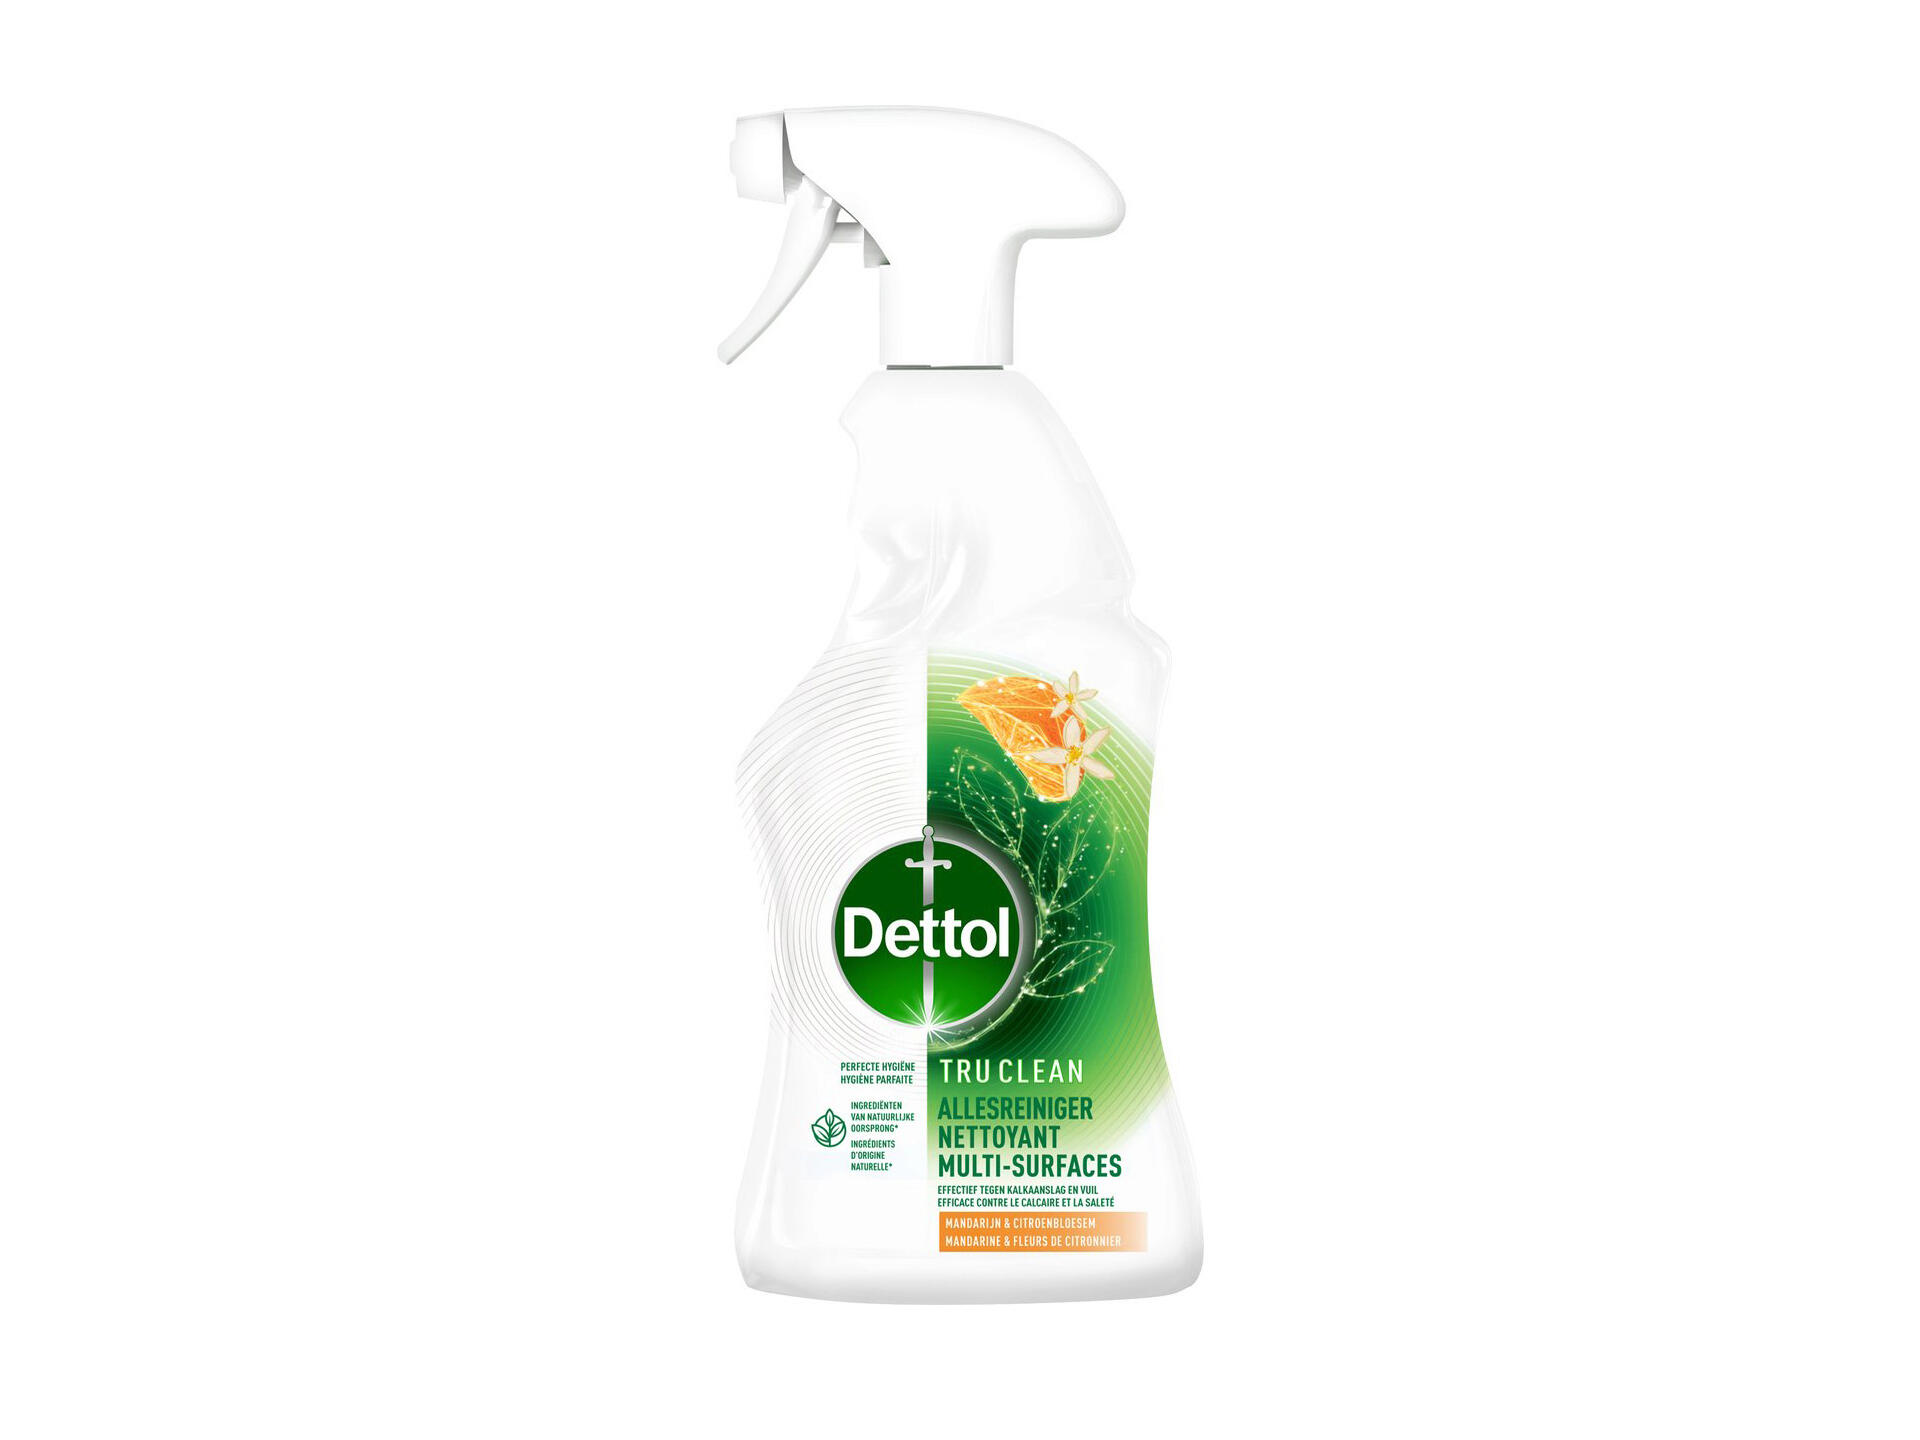 Dettol Truclean spray nettoyant multi-usages mandarine & fleurs de citronnier 750ml